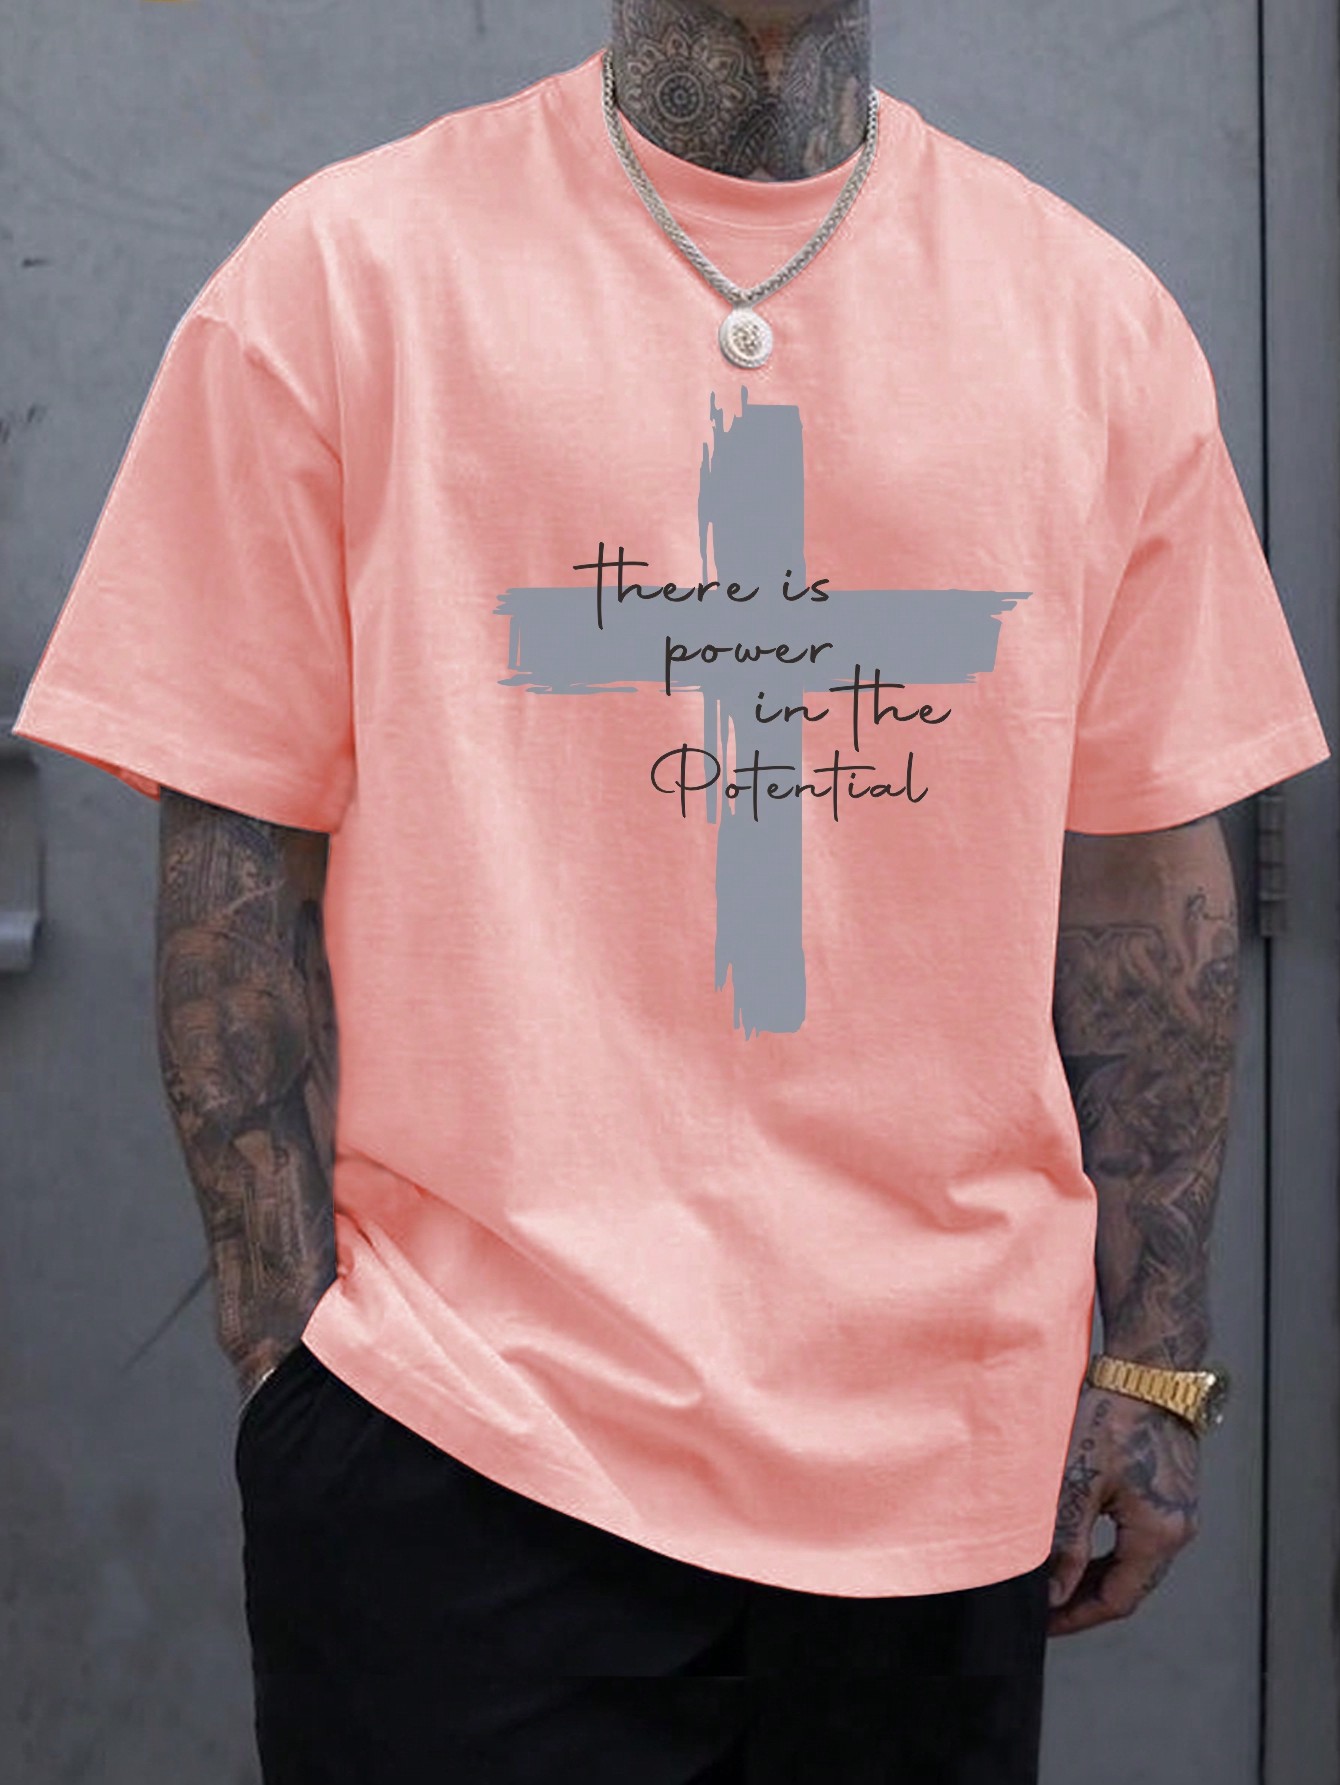 Мужская футболка с заниженными плечами и принтом креста и слогана Manfinity LEGND, розовый